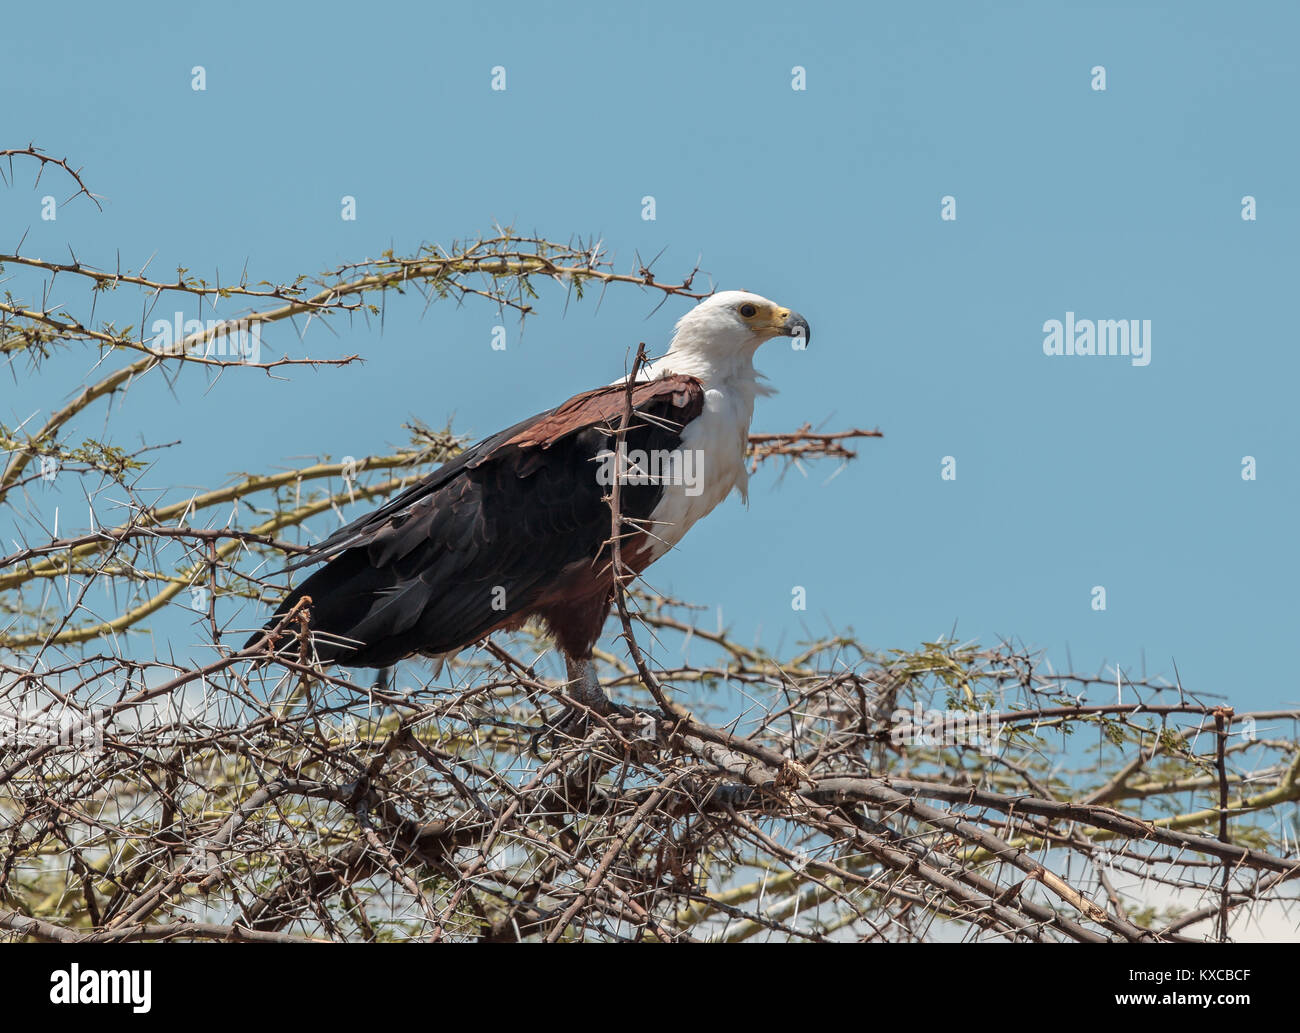 El águila pescadora africana, o para distinguirlo de los verdaderos peces águilas, el águila de mar africana, es una especie grande de eagle encontrados a lo largo de sub-Sahara Foto de stock